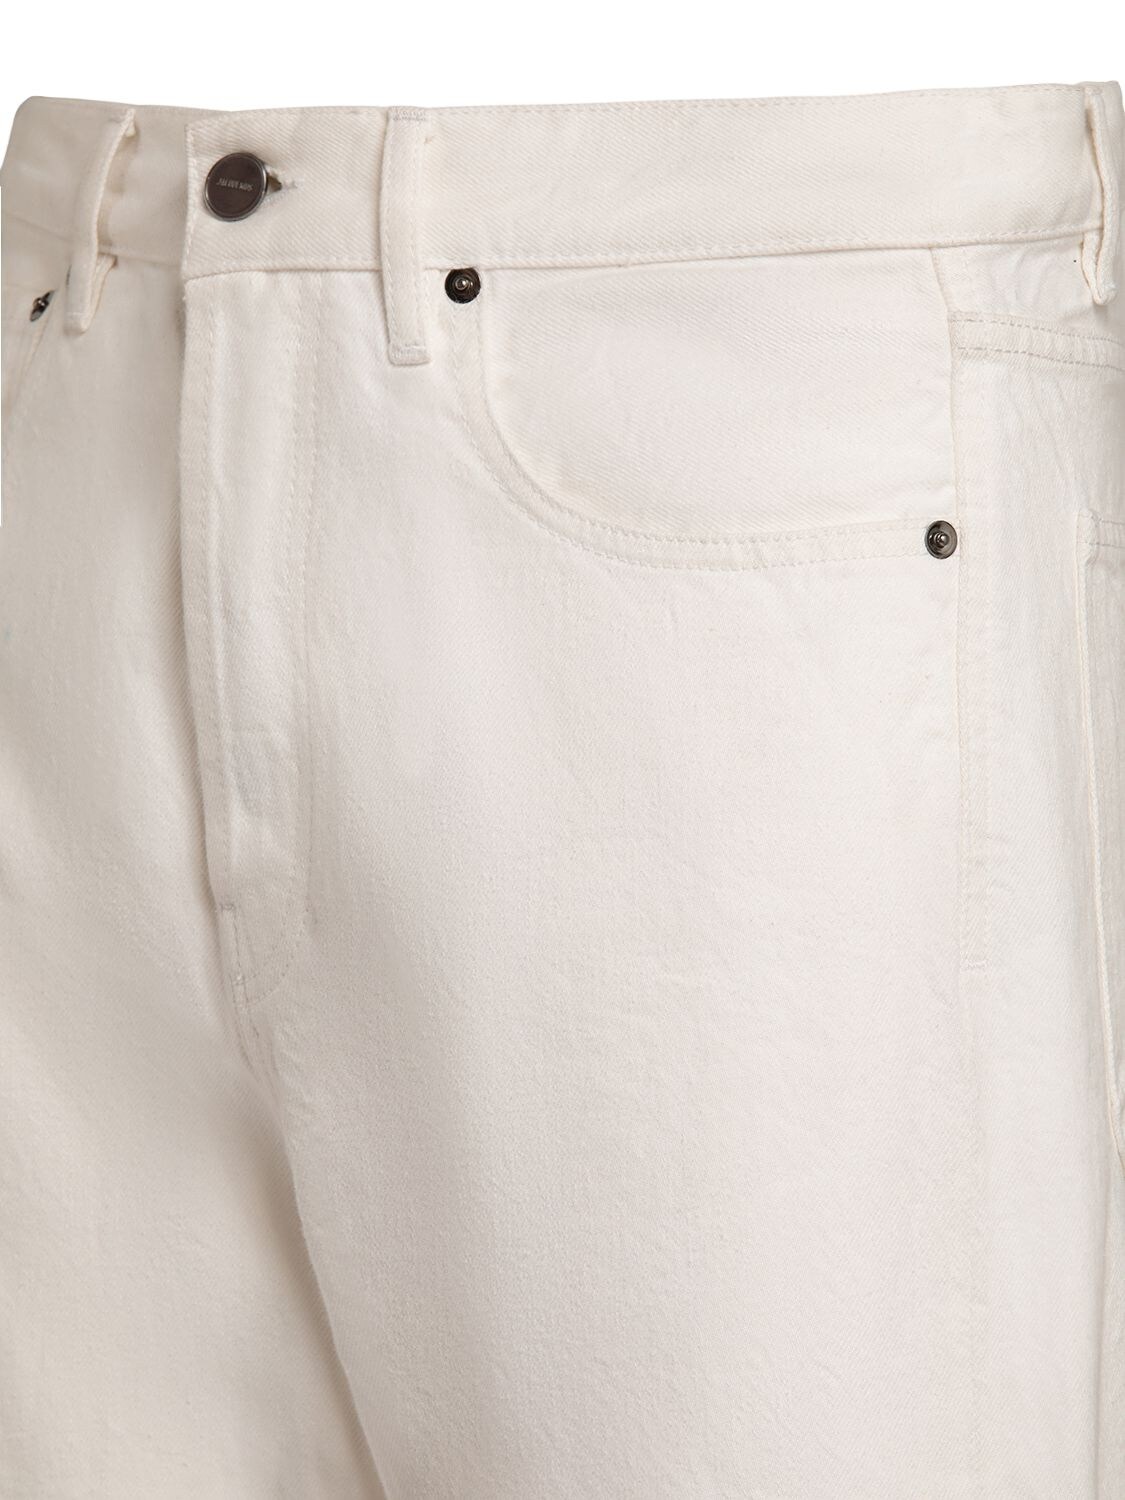 Shop Jacquemus Le De-nimes Suno Cotton Jeans In White